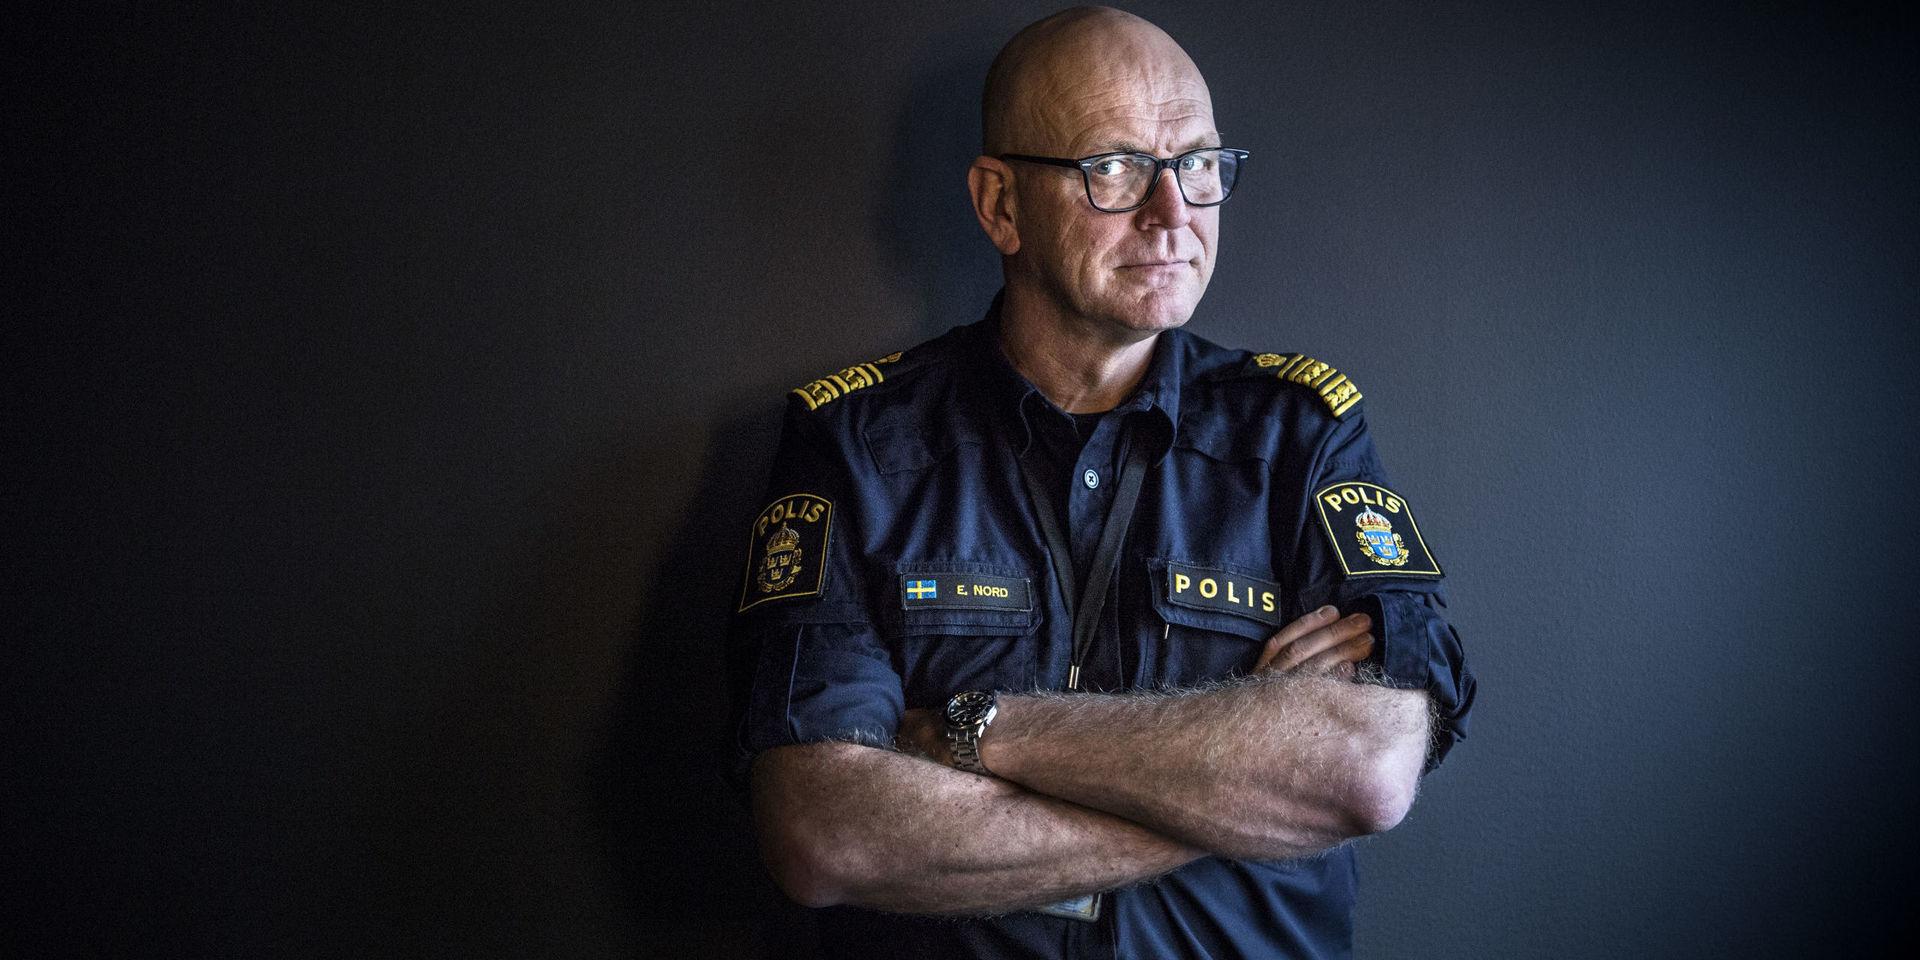 Erik Nord, polischef i Göteborg,  betonar att könsrollerna i de kriminella gängen ofta är väldigt stereotypa.